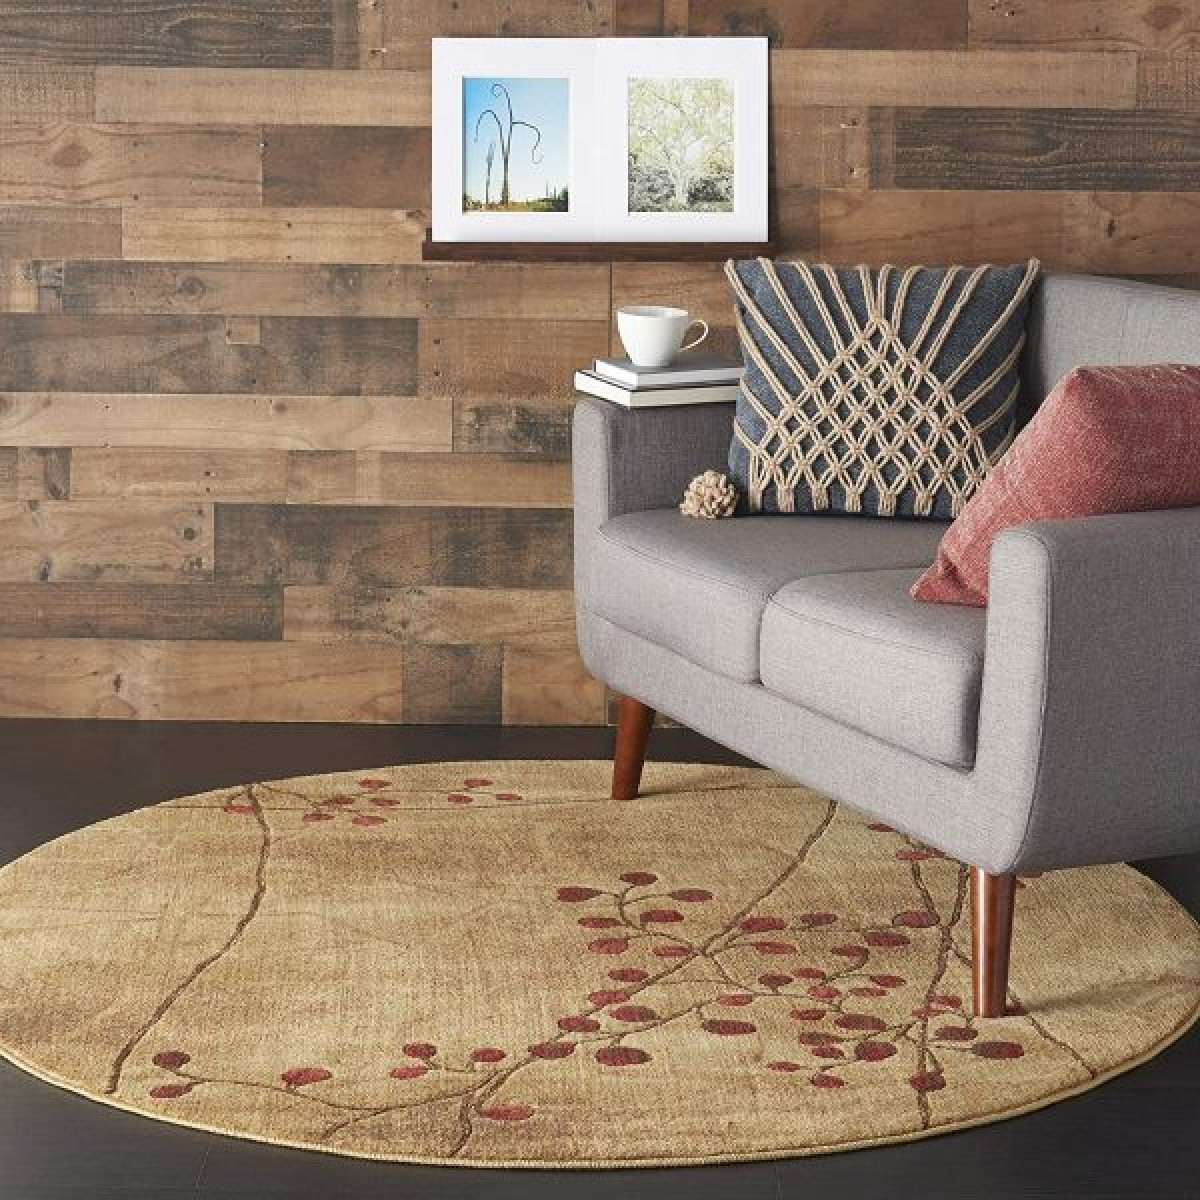 Tấm thảm màu nâu nhạt điểm hoạ tiết hoa tinh tế thích hợp với chủ nhân yêu mến sự nhẹ nhàng, cổ điển.